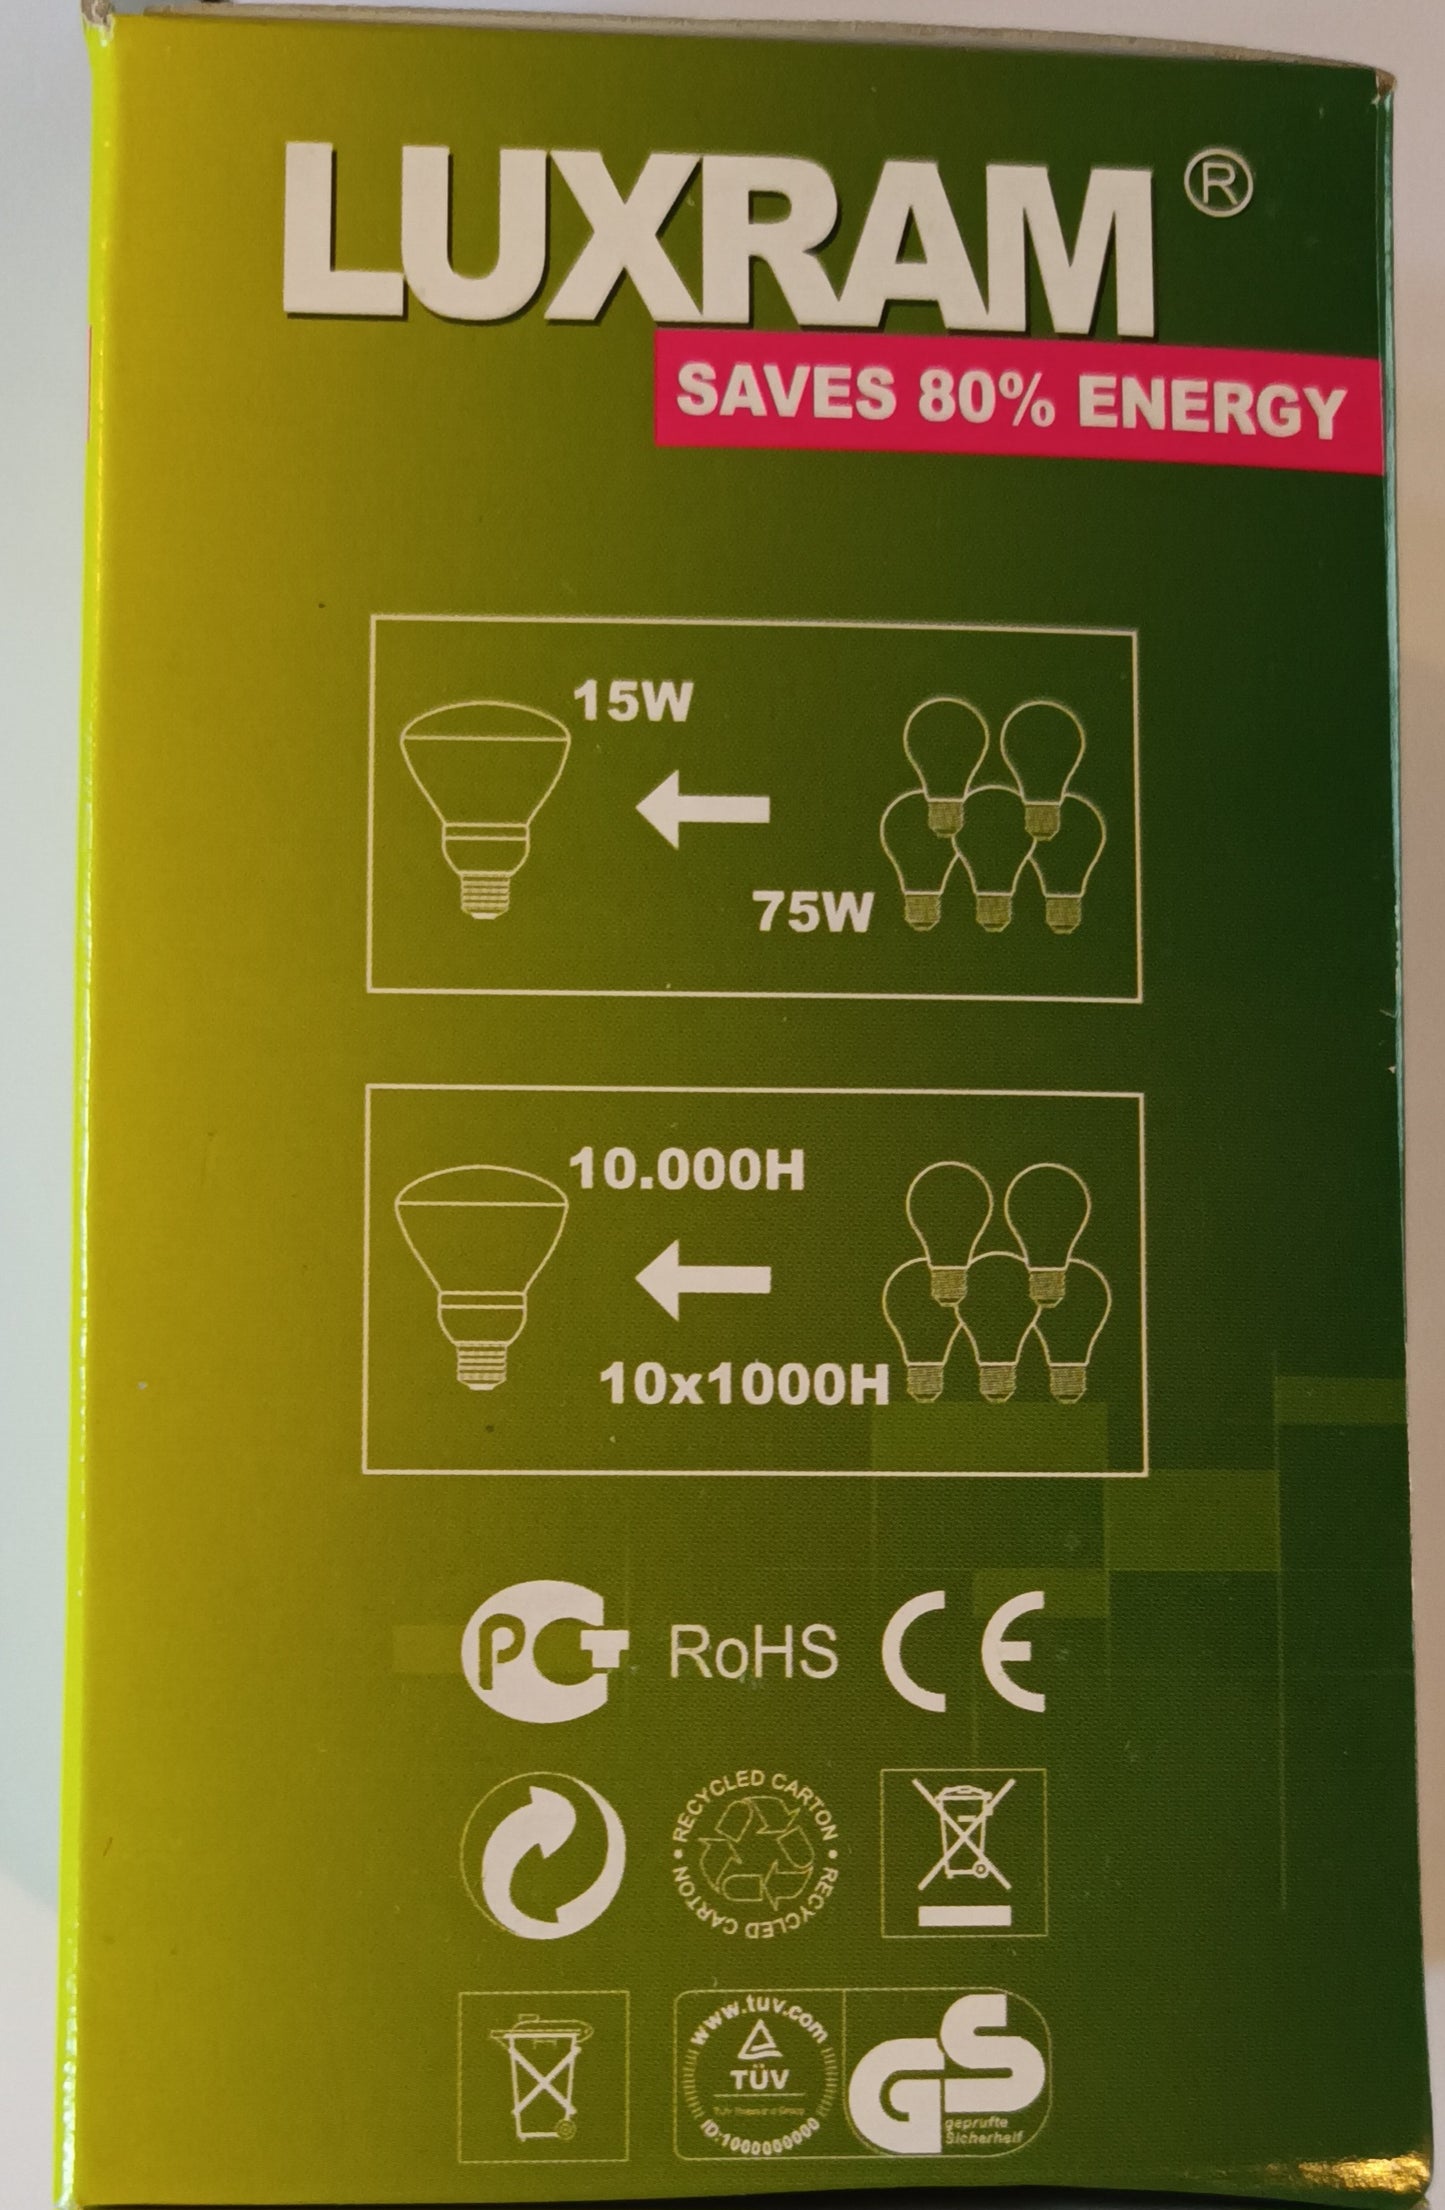 R80 ENERGY SAVER 15W WARM WHITE ES / E27